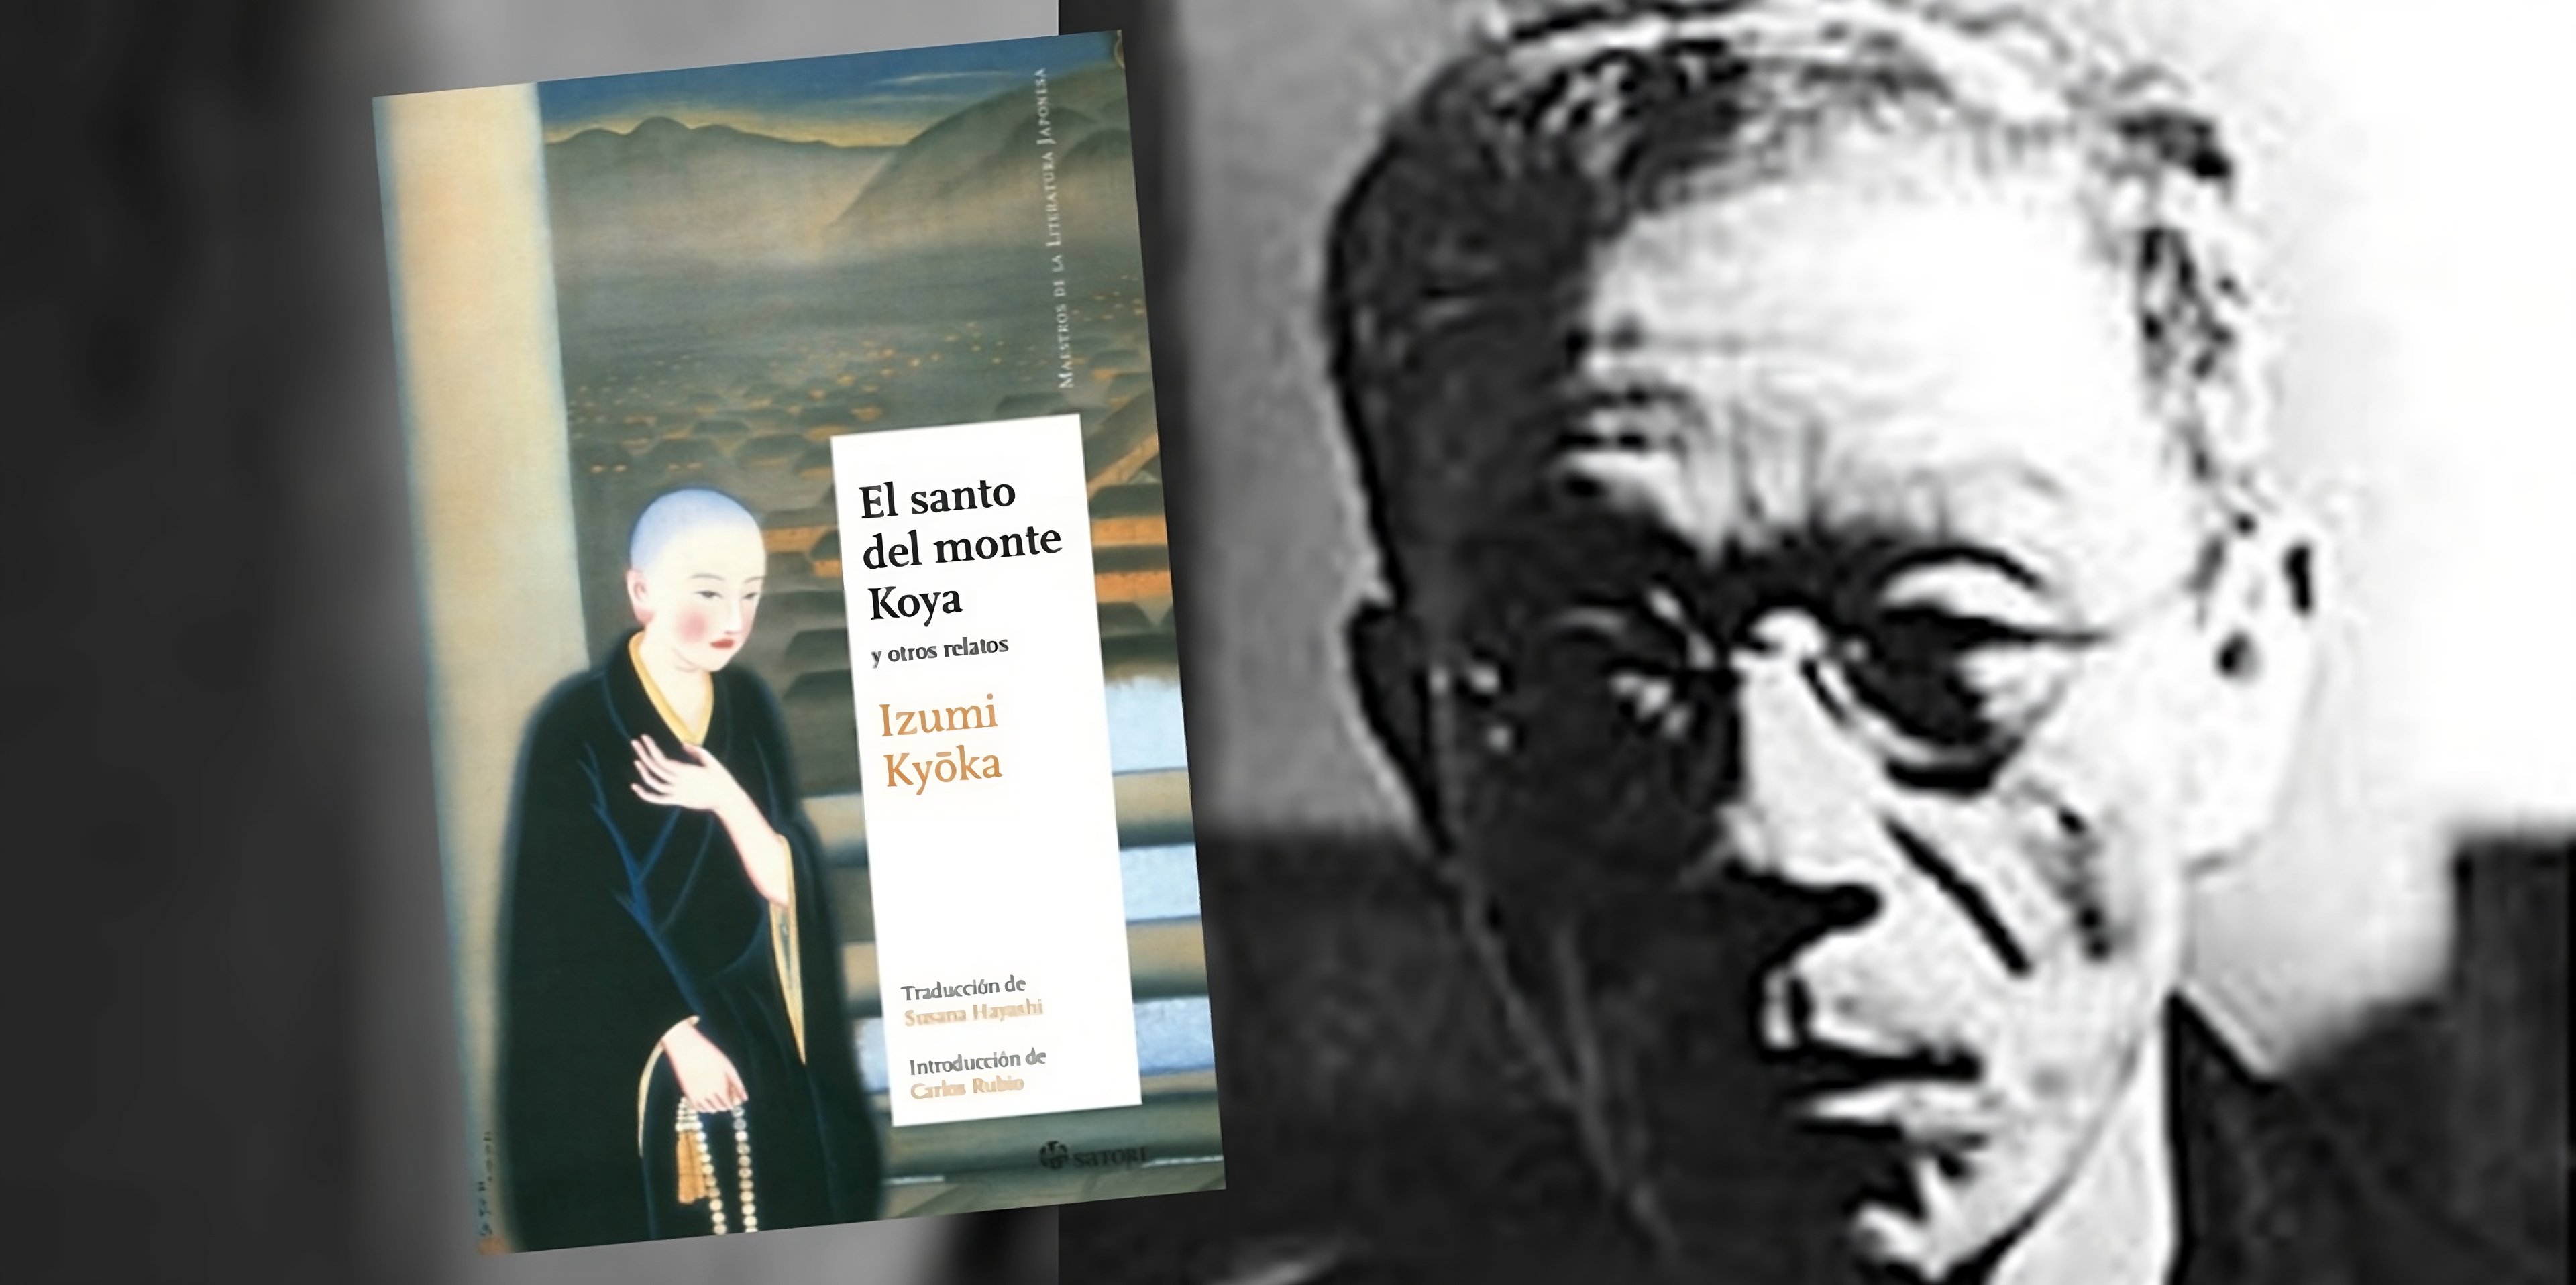 Izumi Kyoka, considerado por muchos el Edgar Allan Poe de Japón, autor de "El santo del monte Koya".